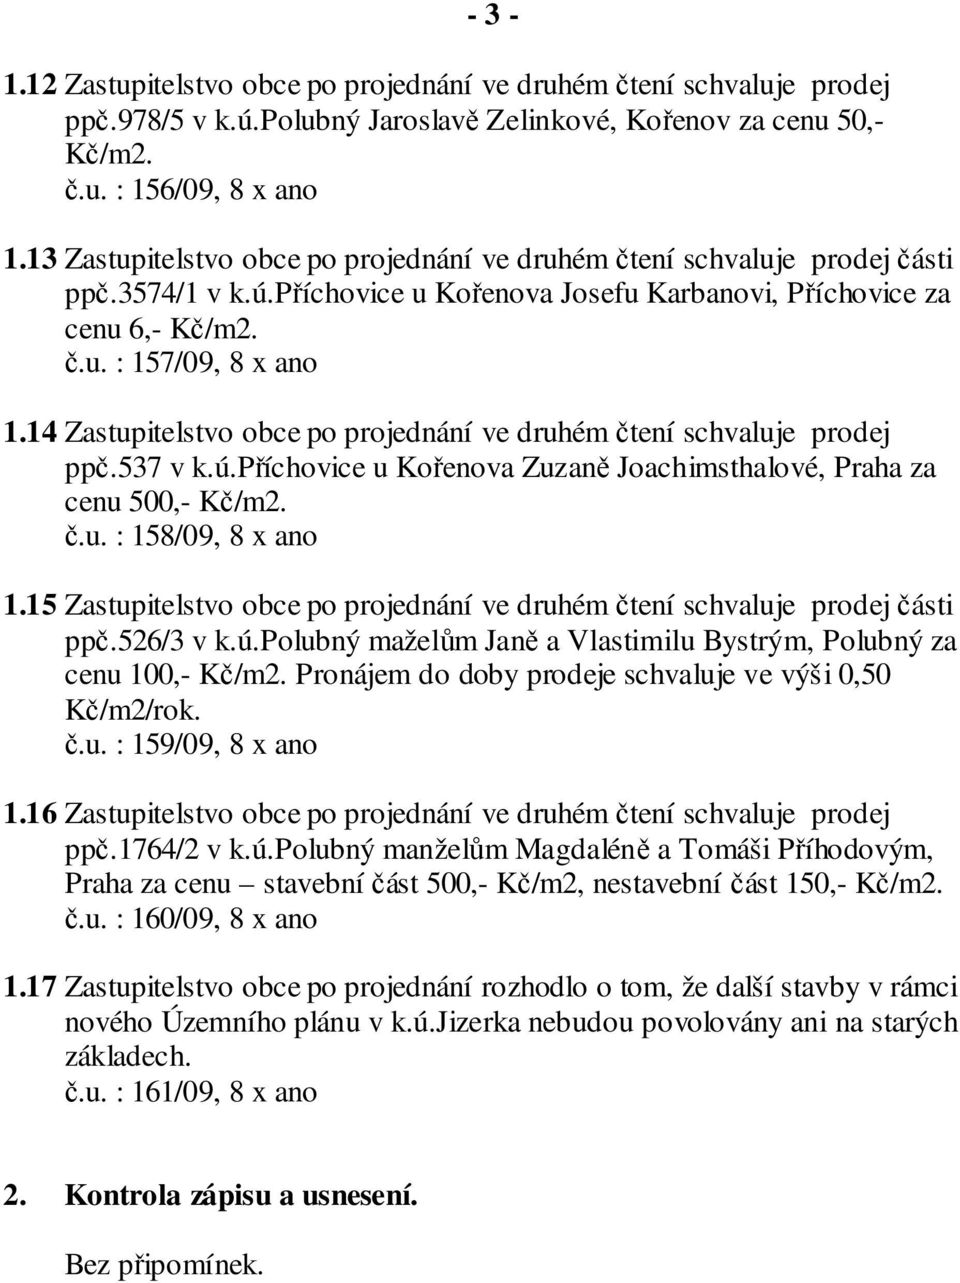 14 Zastupitelstvo obce po projednání ve druhém čtení schvaluje prodej ppč.537 v k.ú.příchovice u Kořenova Zuzaně Joachimsthalové, Praha za cenu 500,- Kč/m2. č.u. : 158/09, 8 x ano 1.